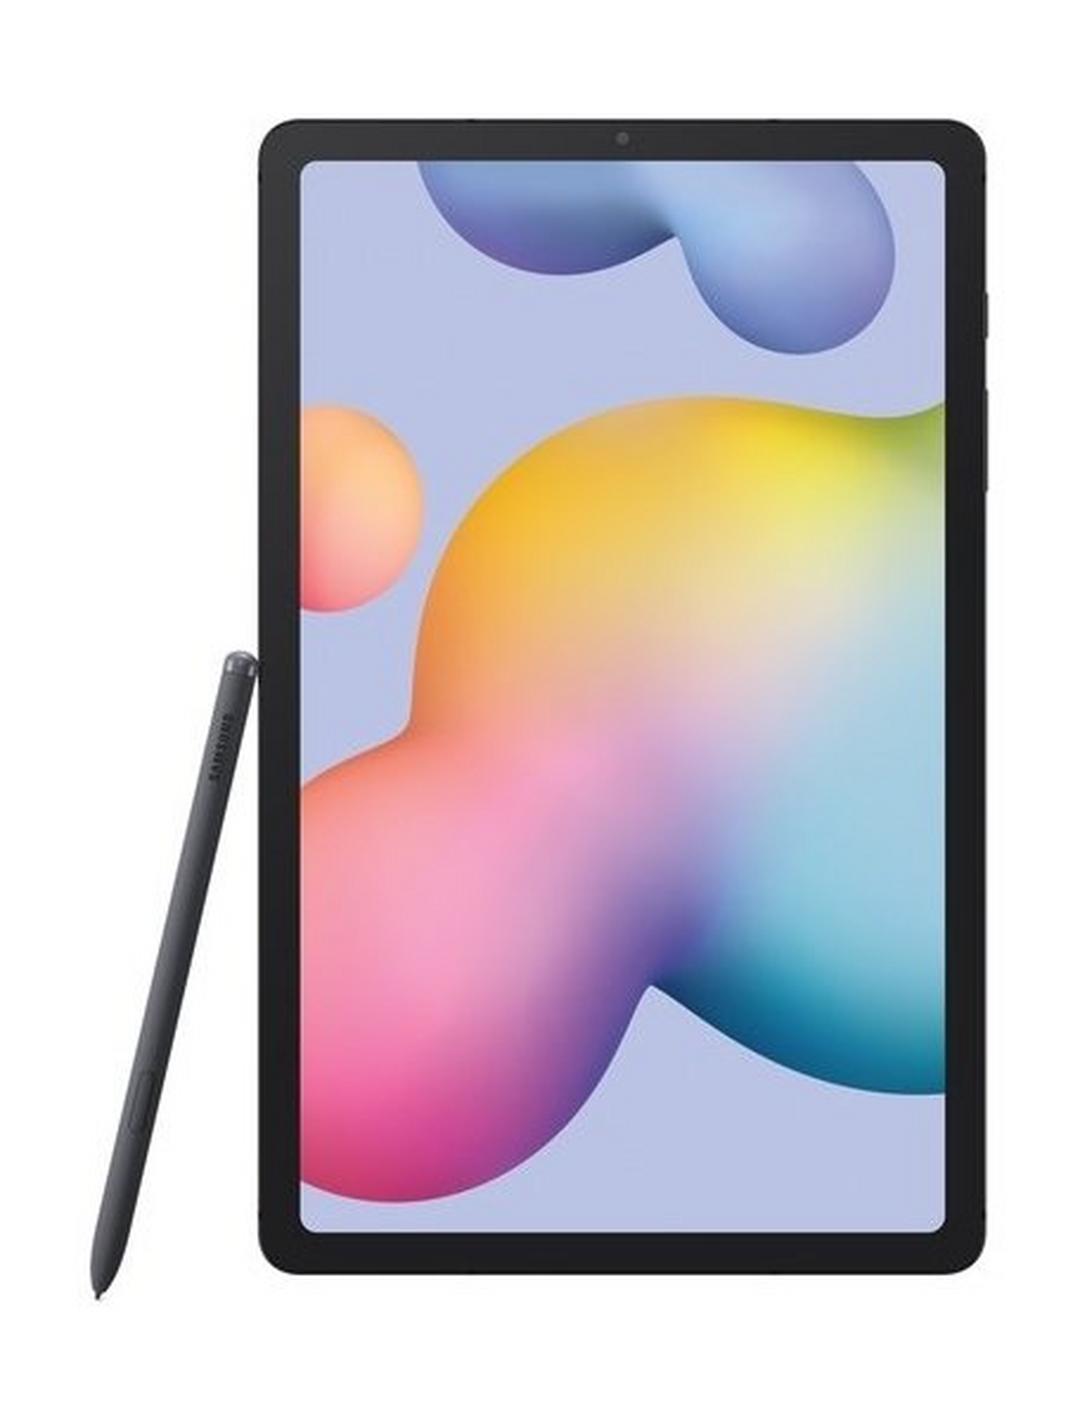 Samsung Galaxy TAB S6 Lite 10.4-inch 4G Tablet - Grey